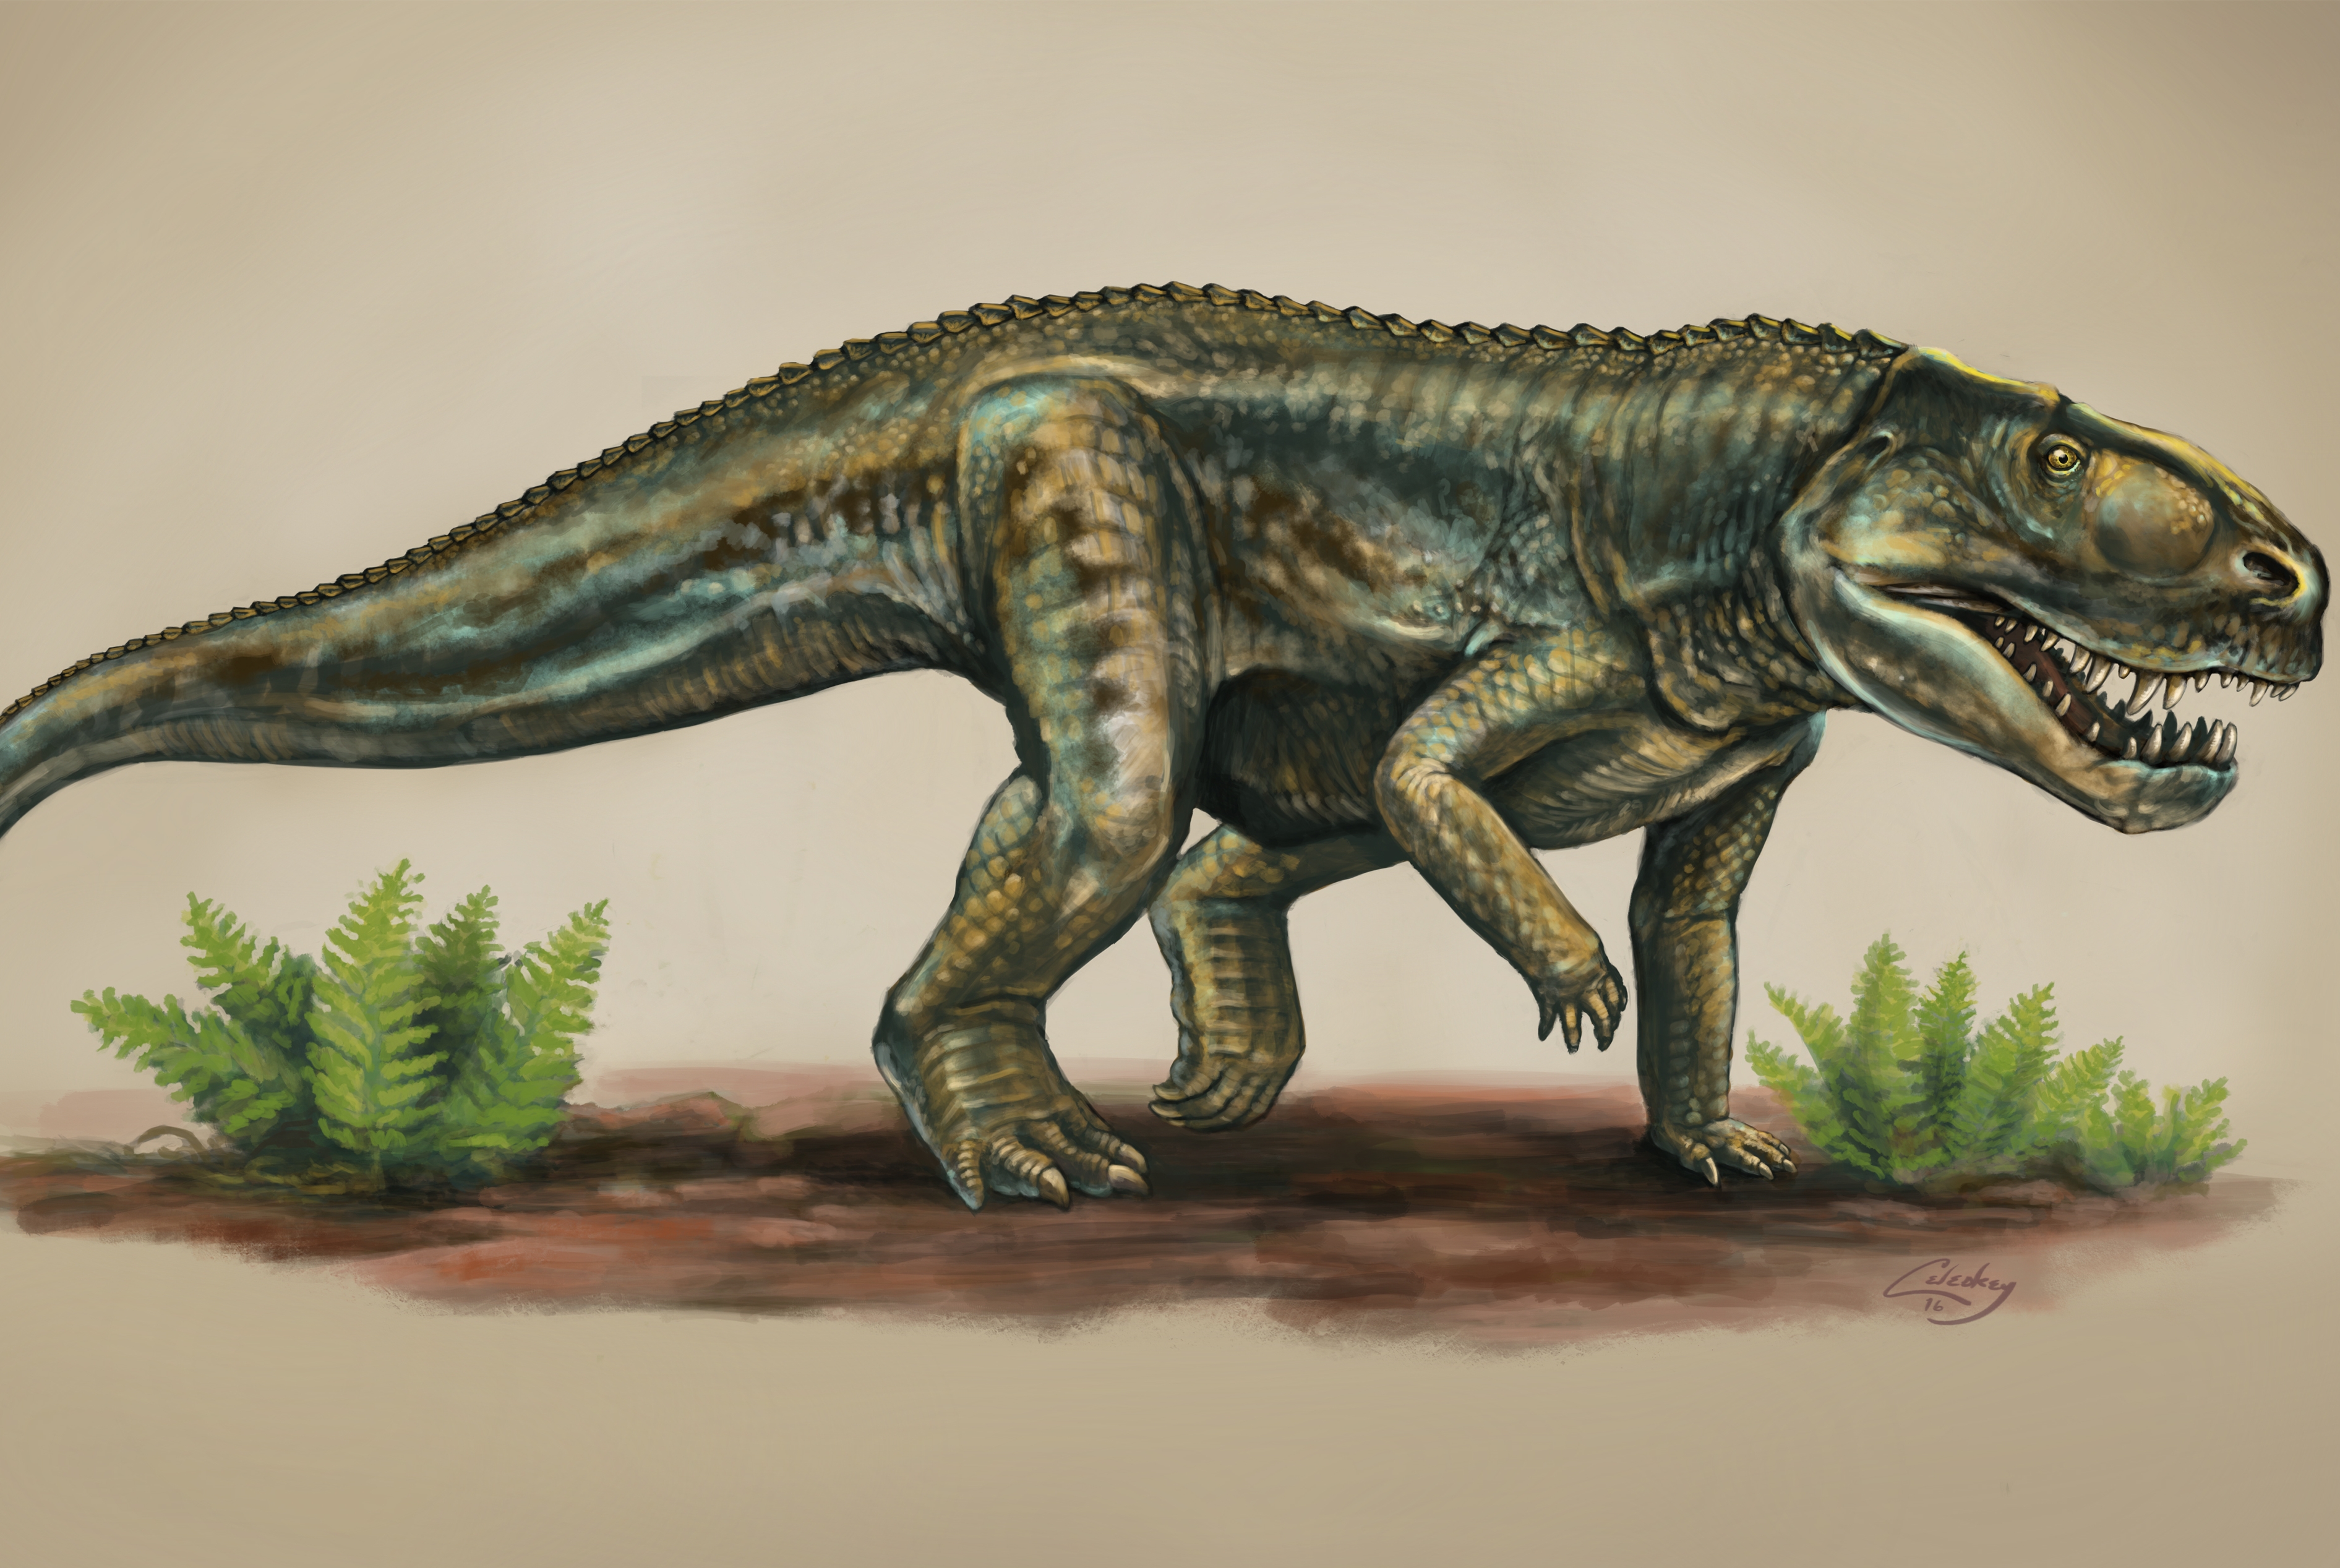 Предки современных рептилий. Архозавры мезозой. Архозавры предки крокодил. Архозавры Триасового периода. Равизухии Триасового периода.